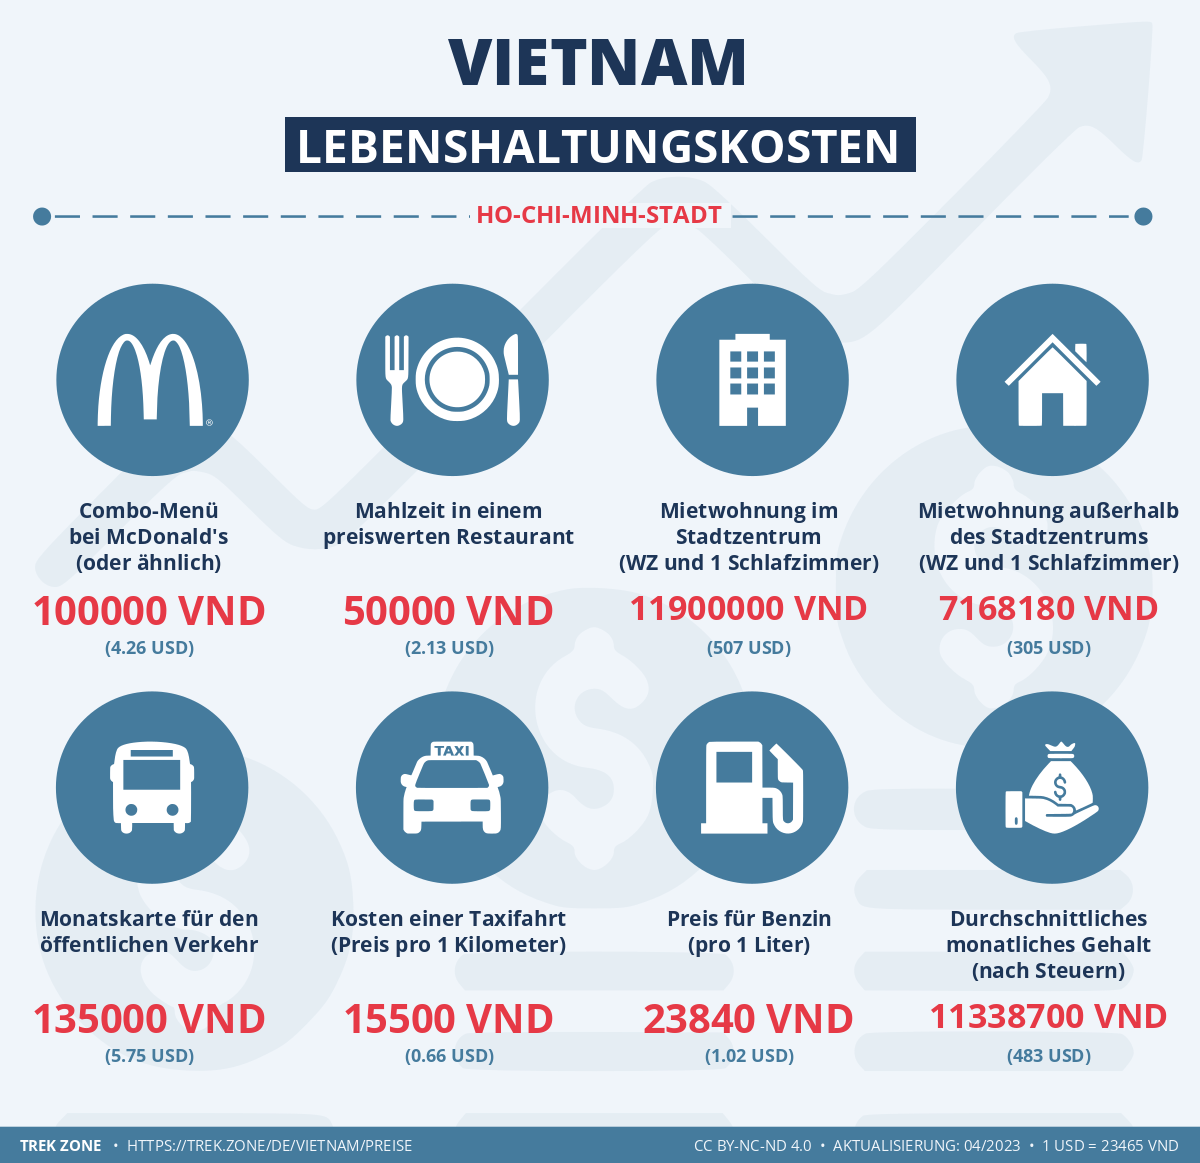 preise und lebenskosten vietnam